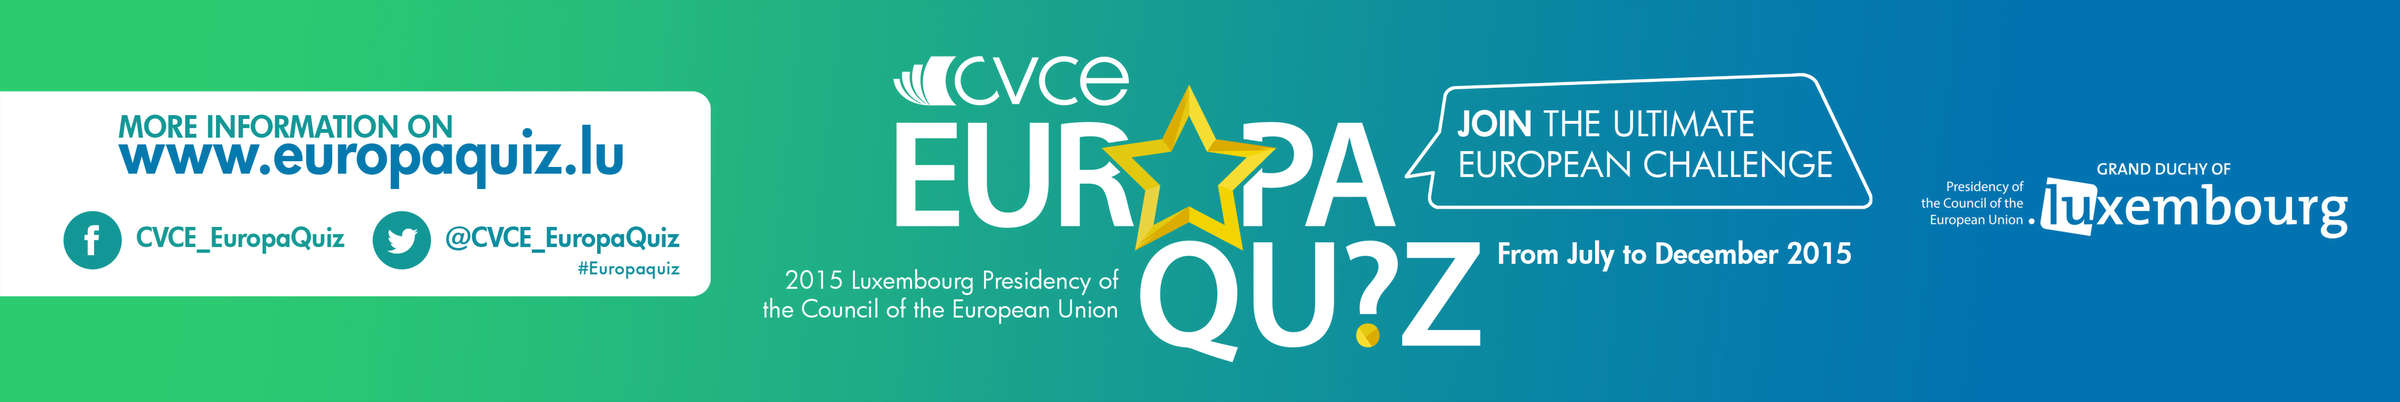 www.europaquiz.lu